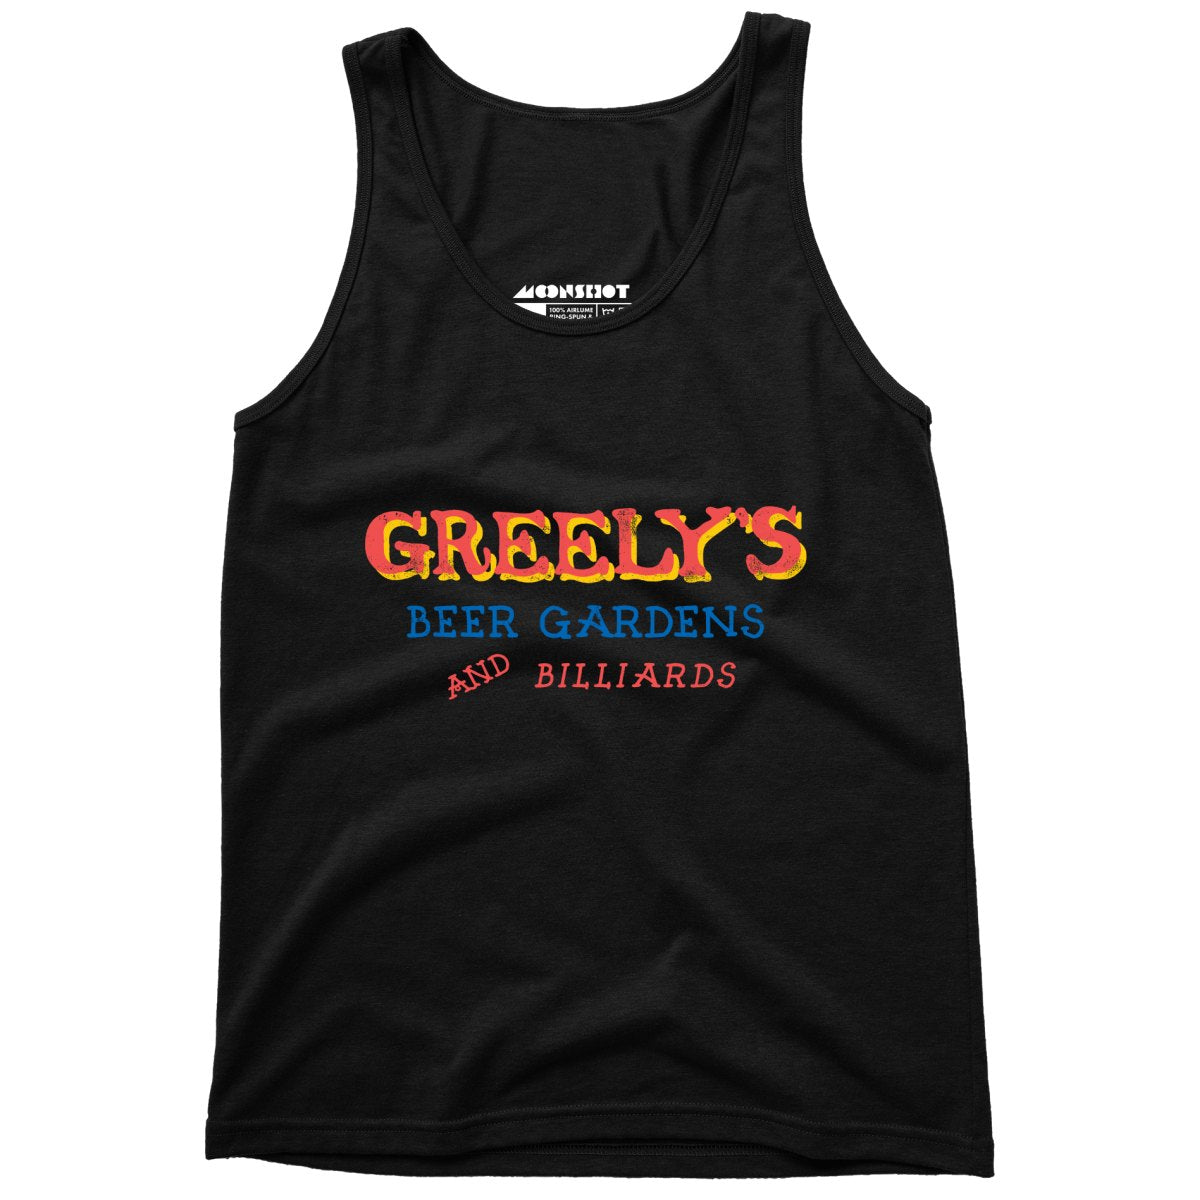 Greely's Beer Gardens & Billiards - Unisex Tank Top